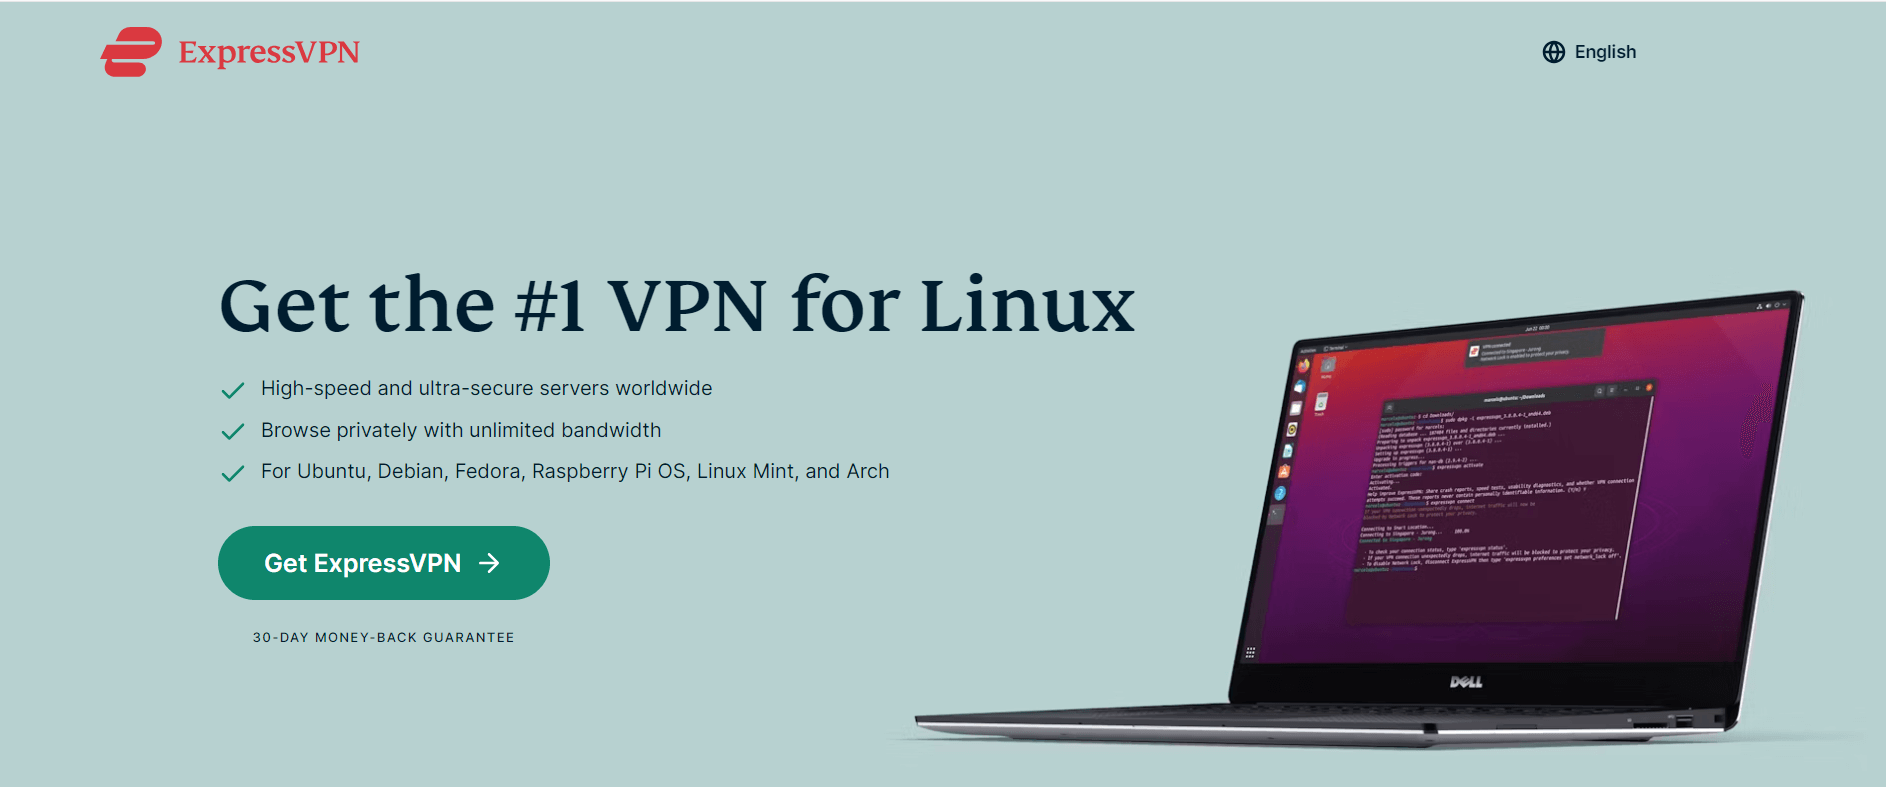 expressvpn-download-linux-in-Spain